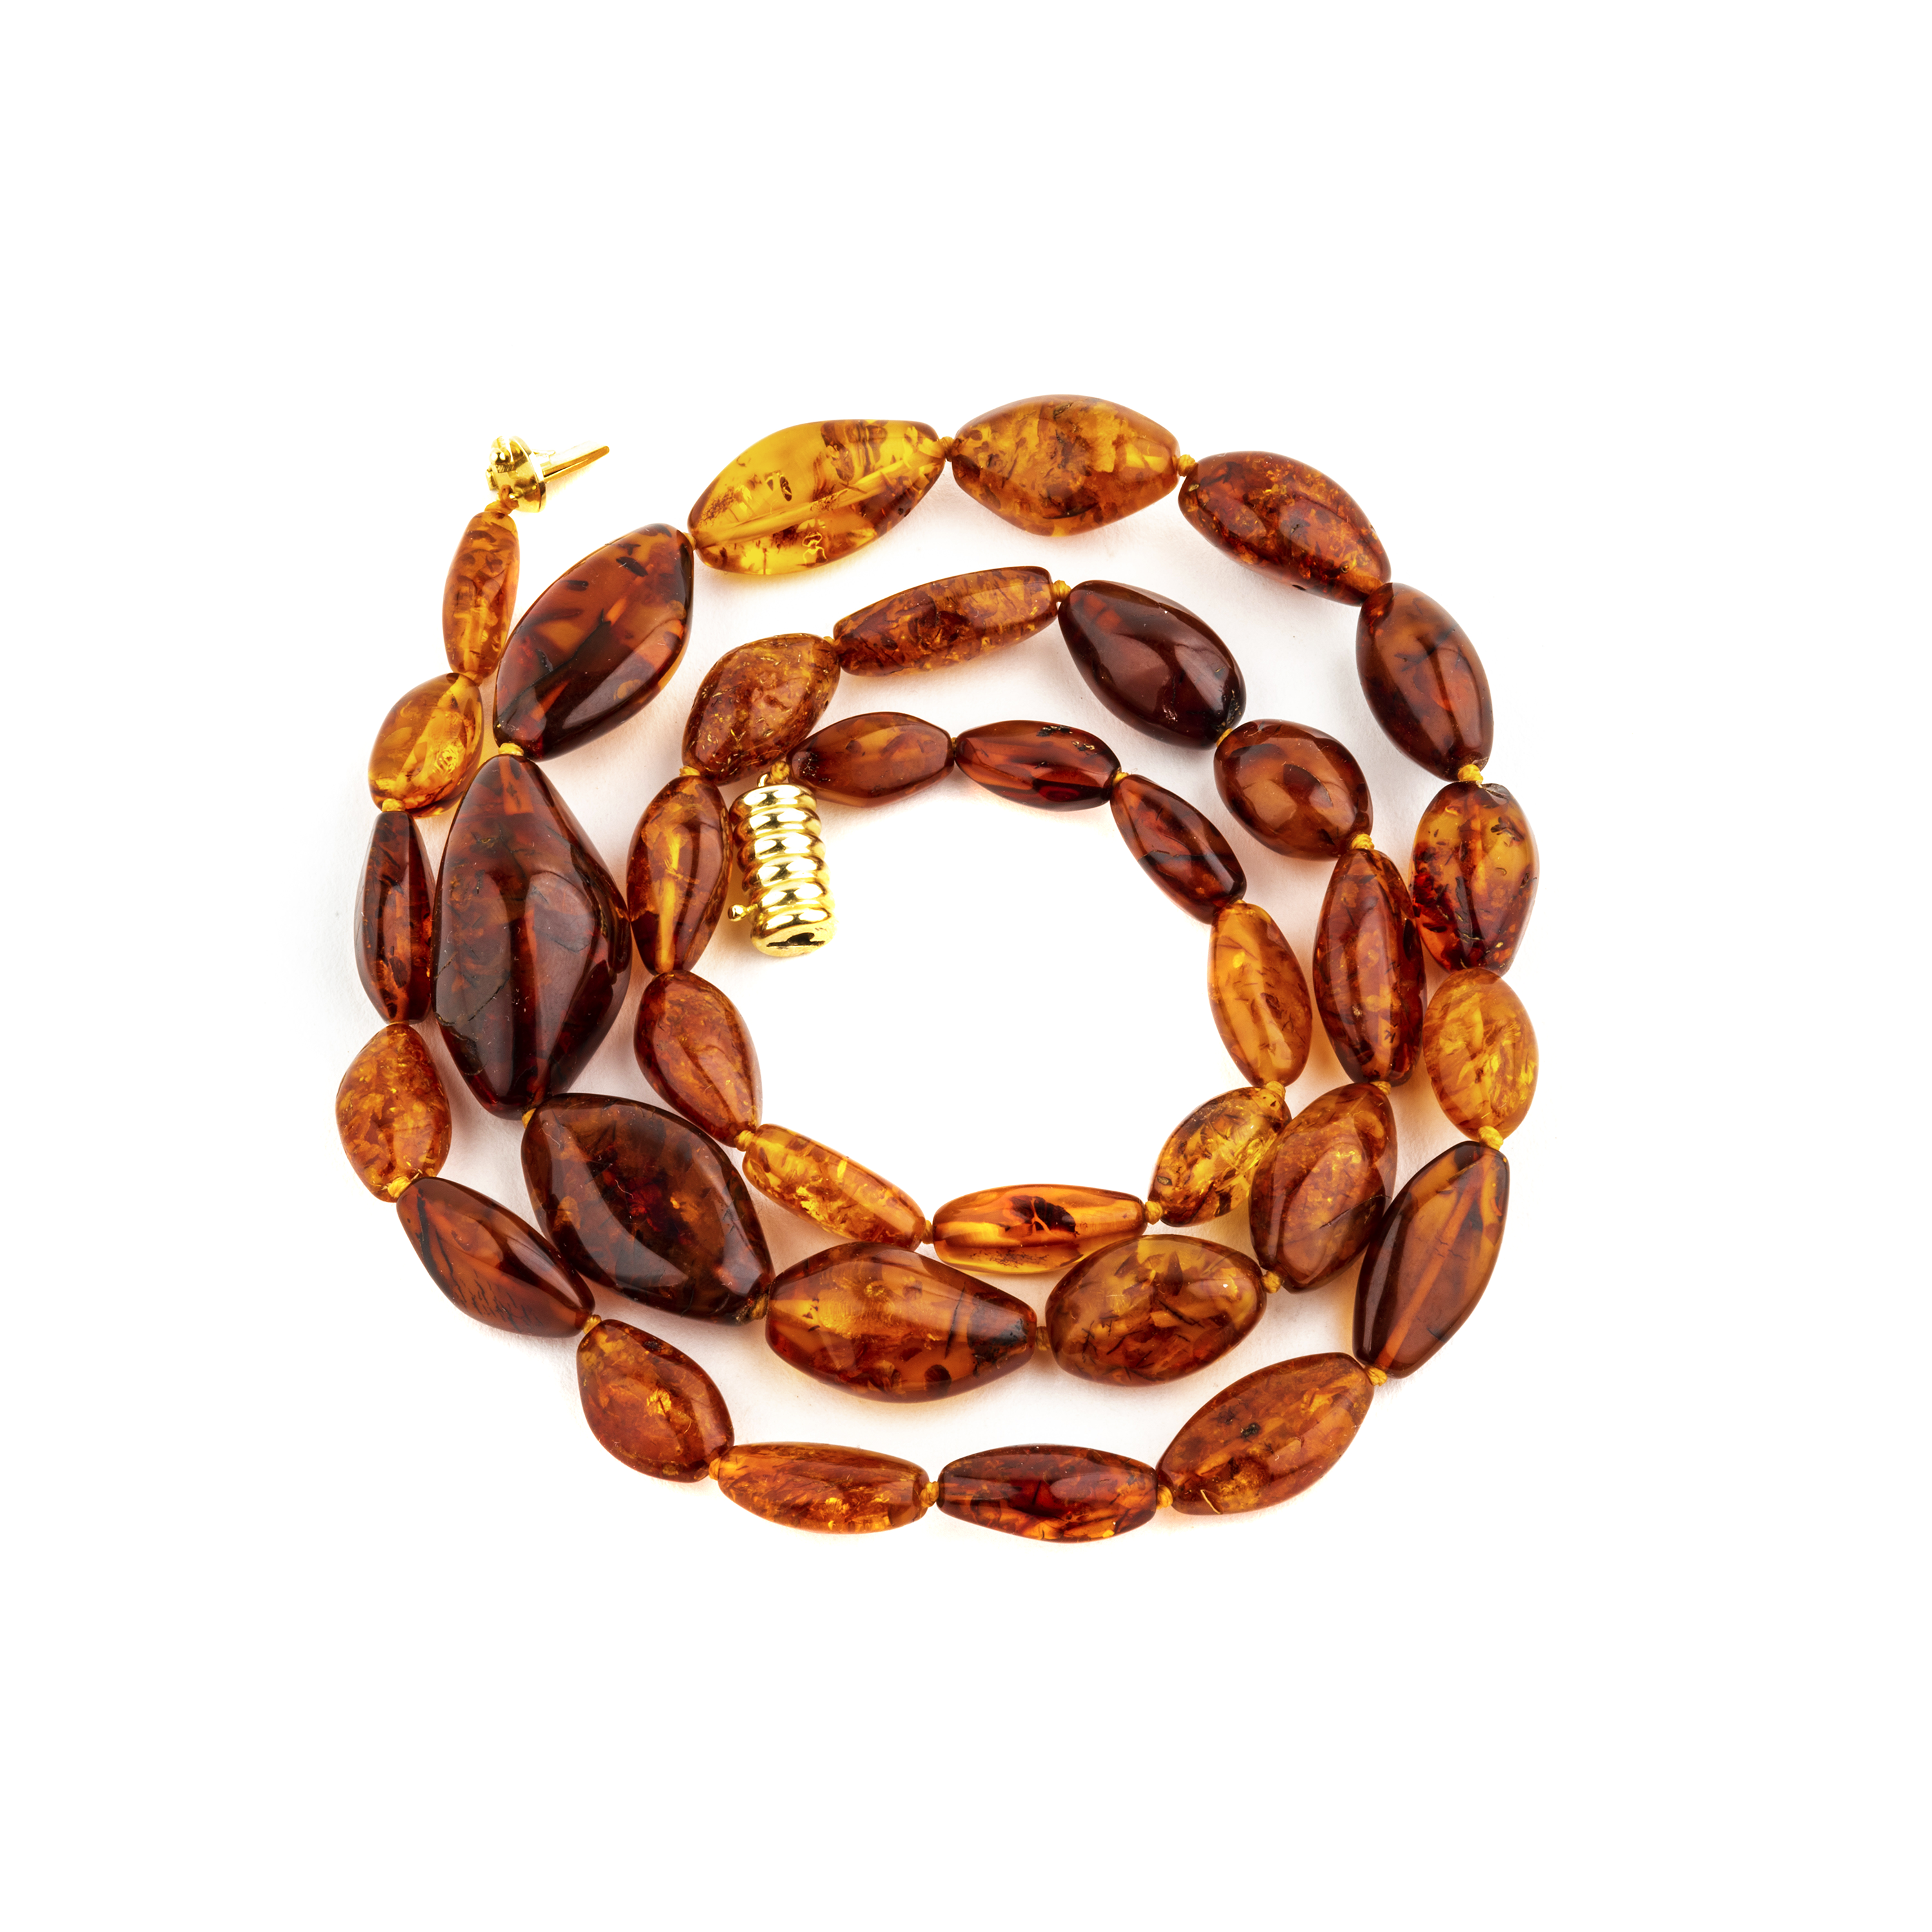 Vintage Baltic amber necklace and bracelet set